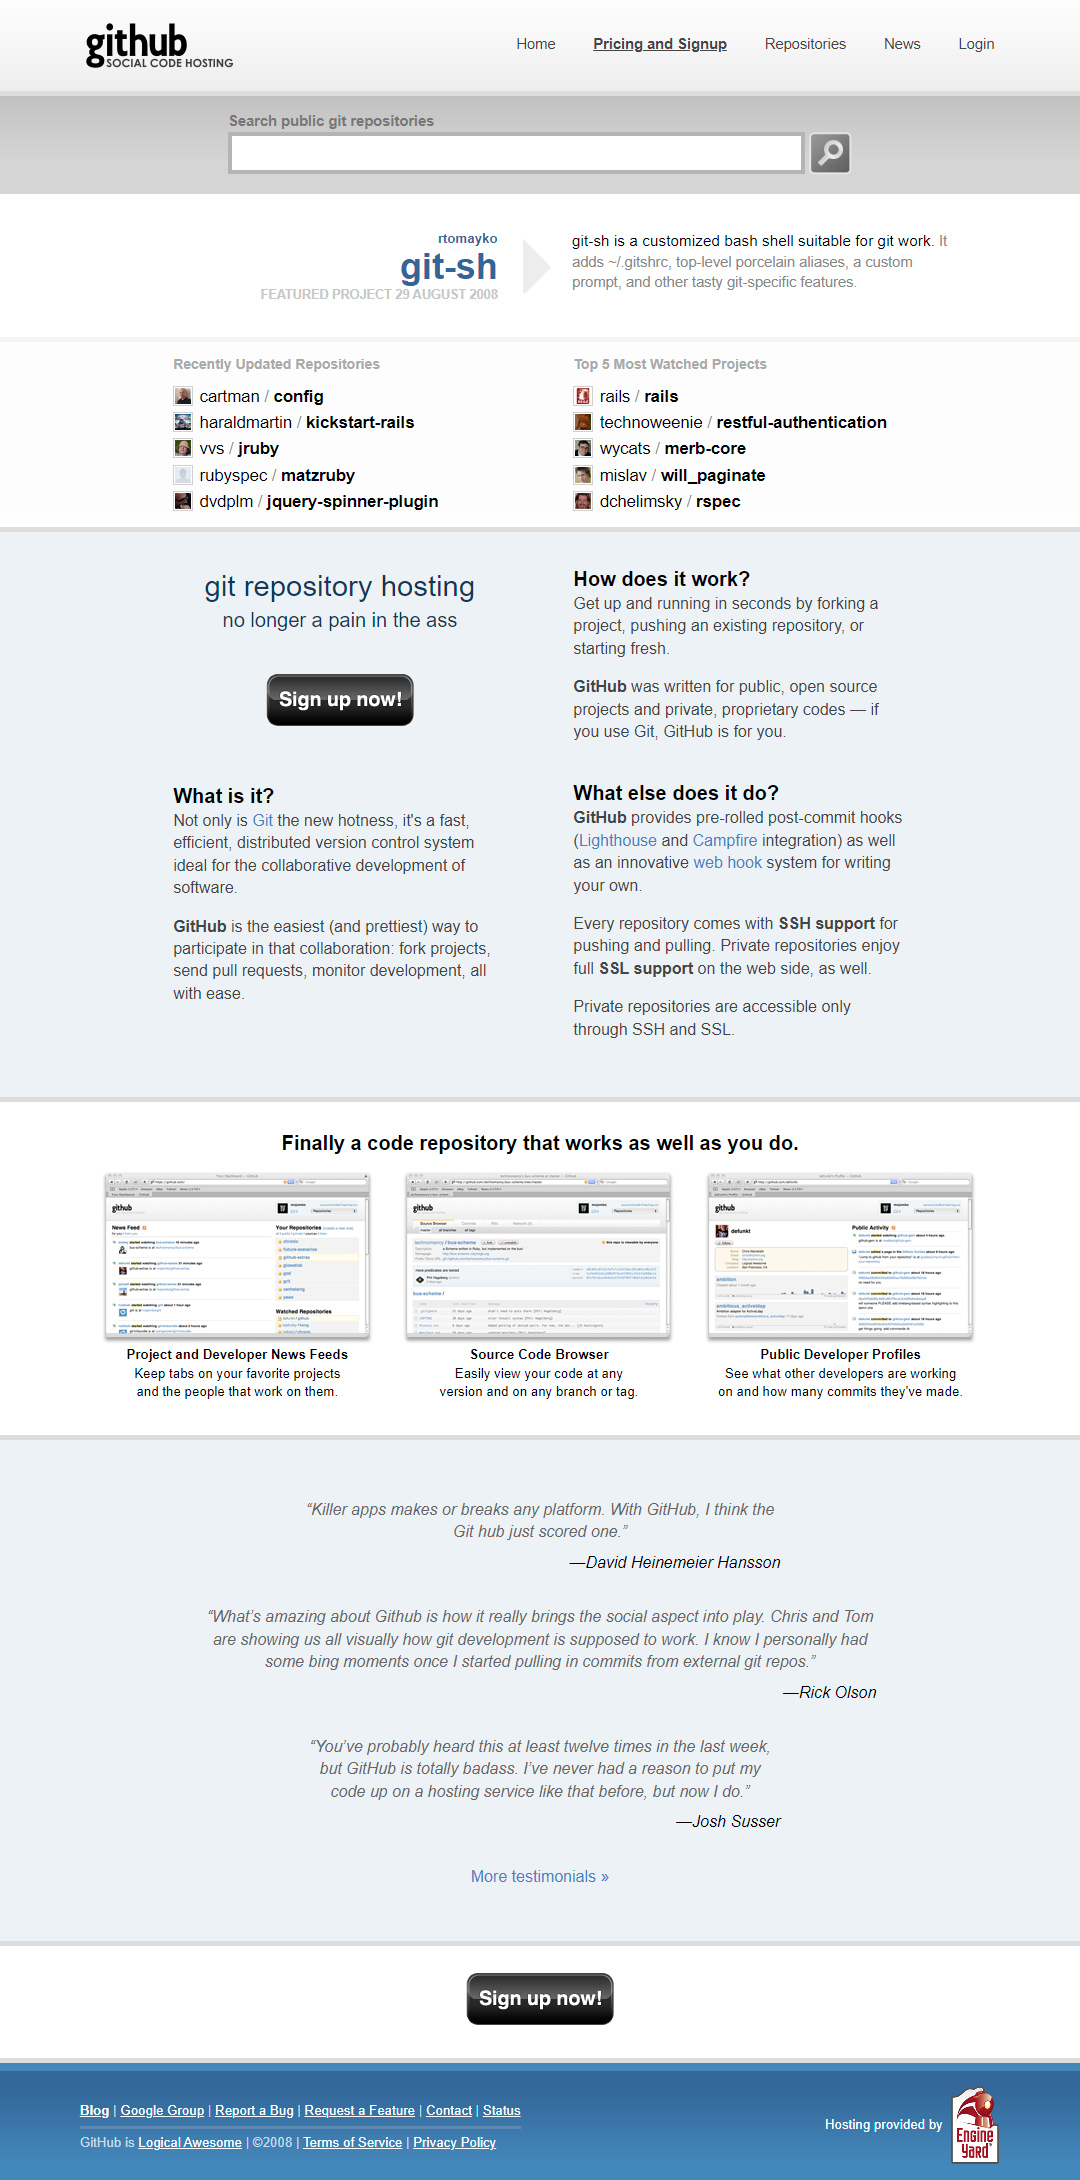 GitHub website in 2008